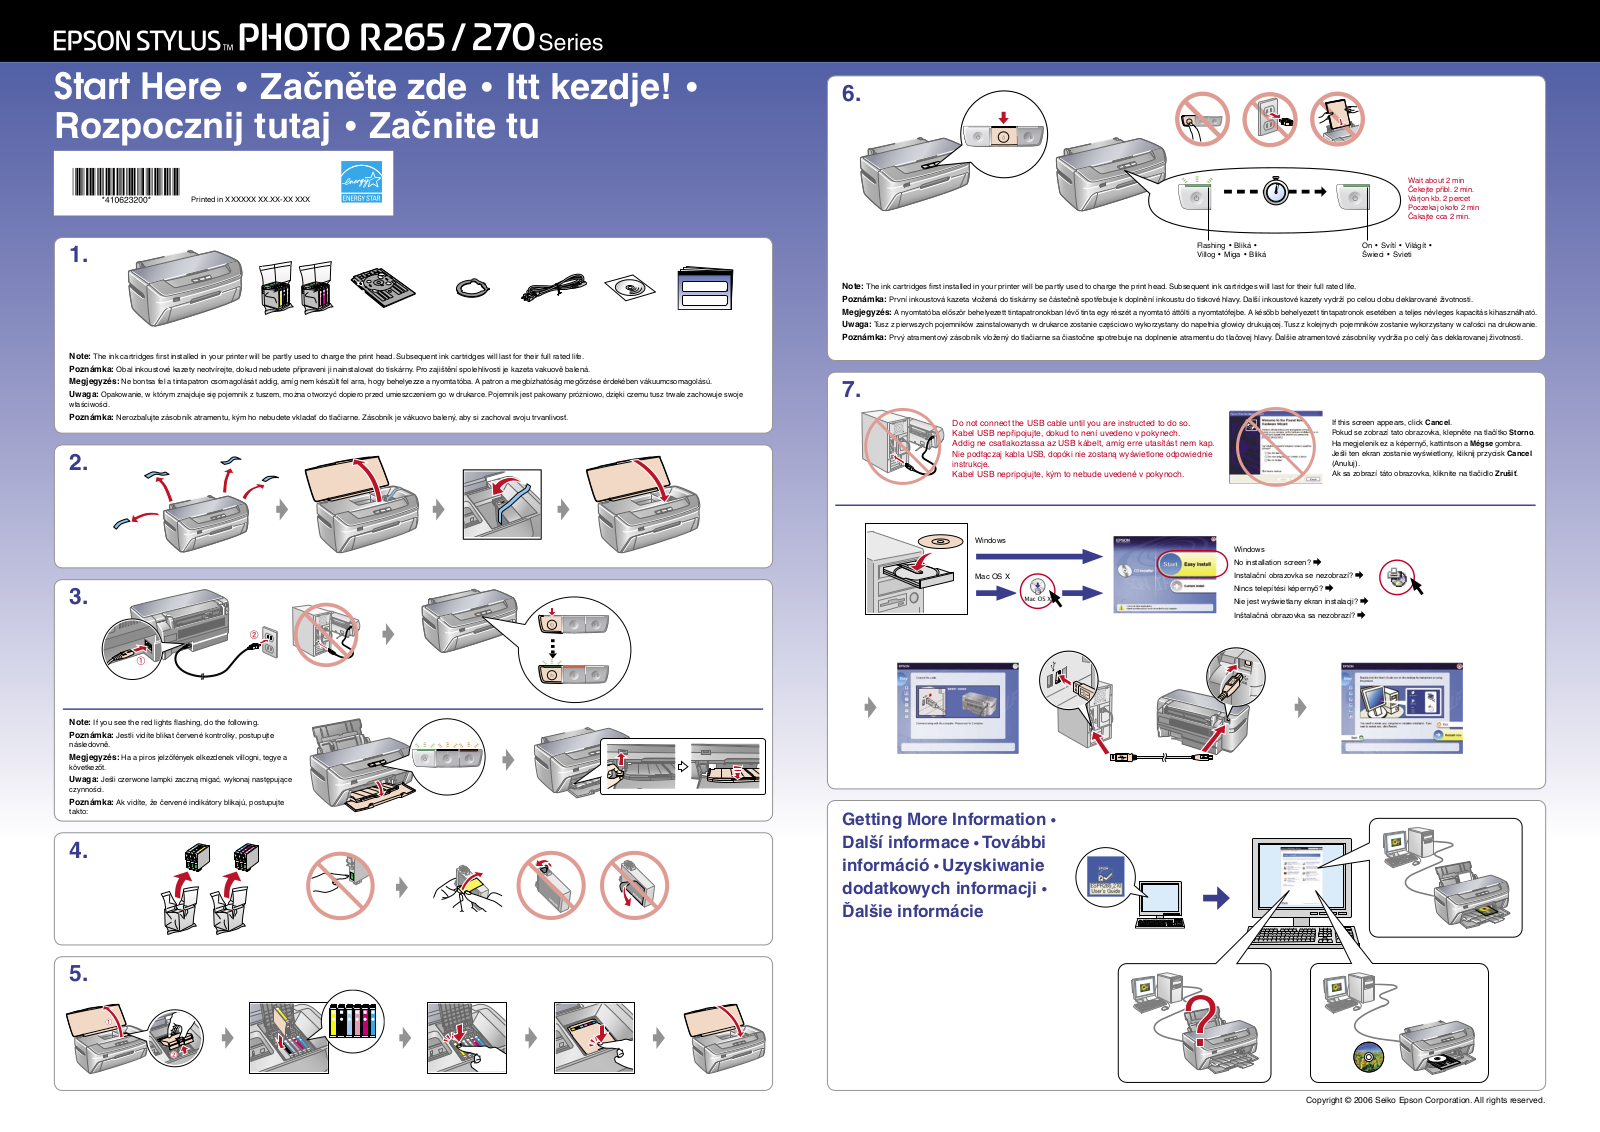 Epson STYLUS PHOTO R270 series, STYLUS PHOTO R265 series Installation Manual